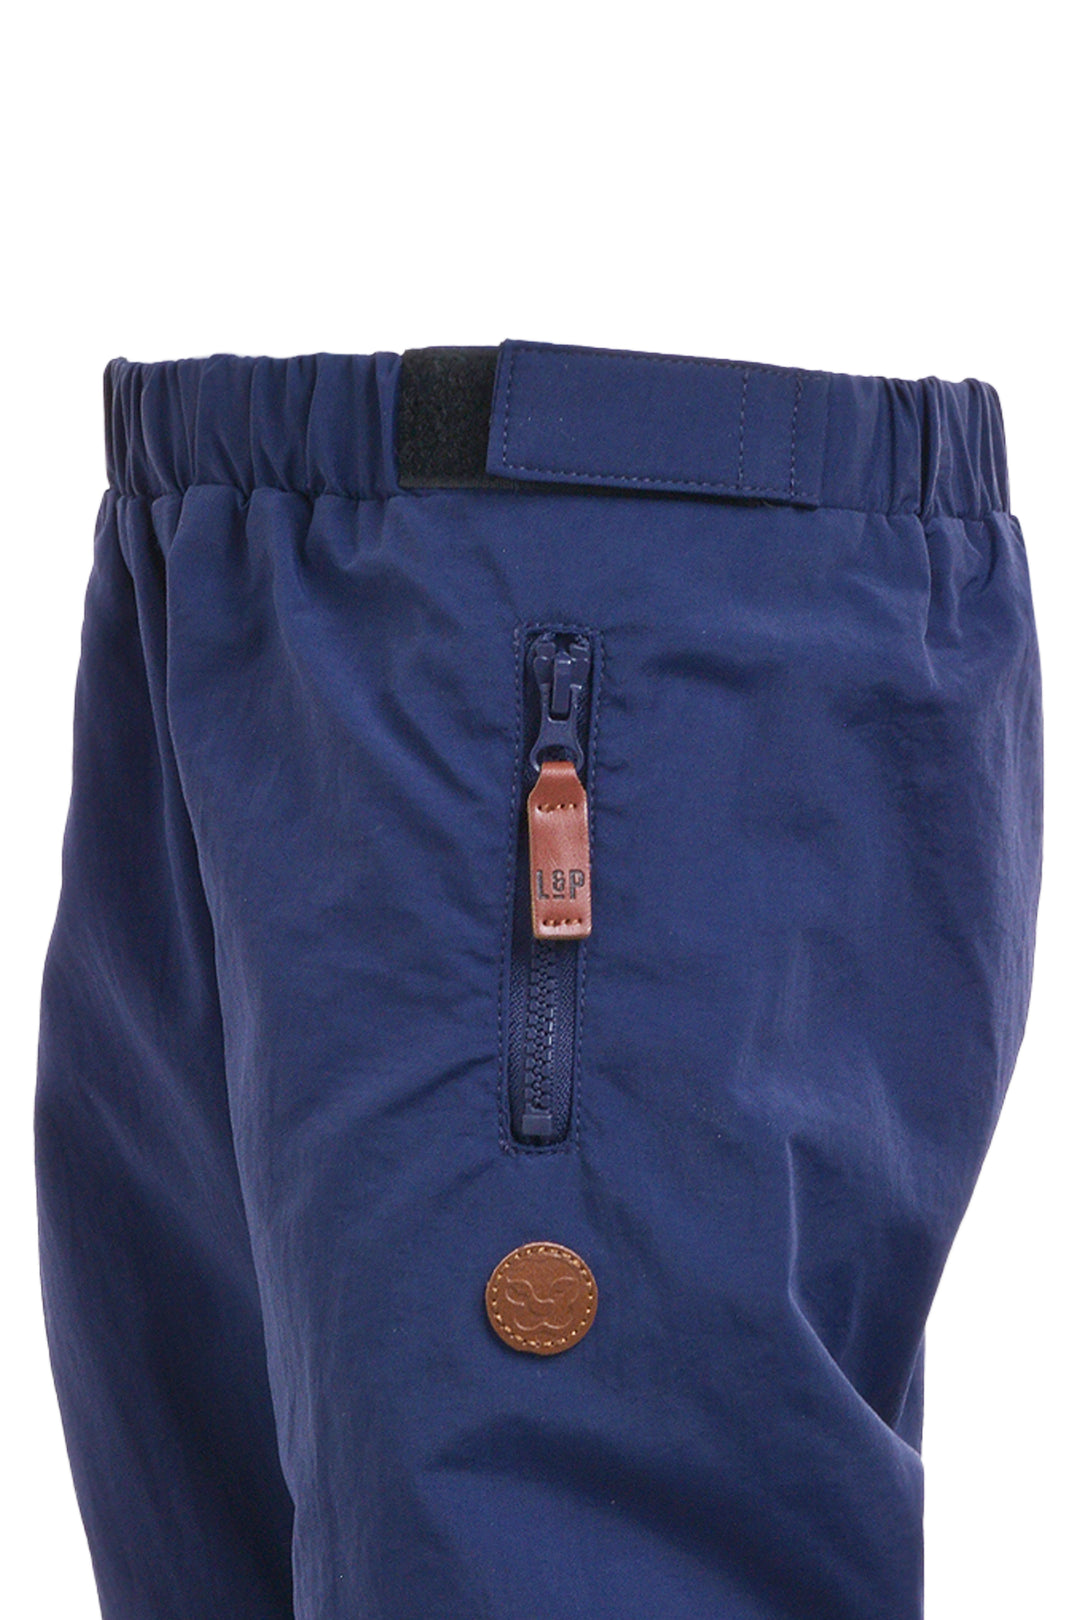 Pantalon d'extérieur doublé en coton [Junior]